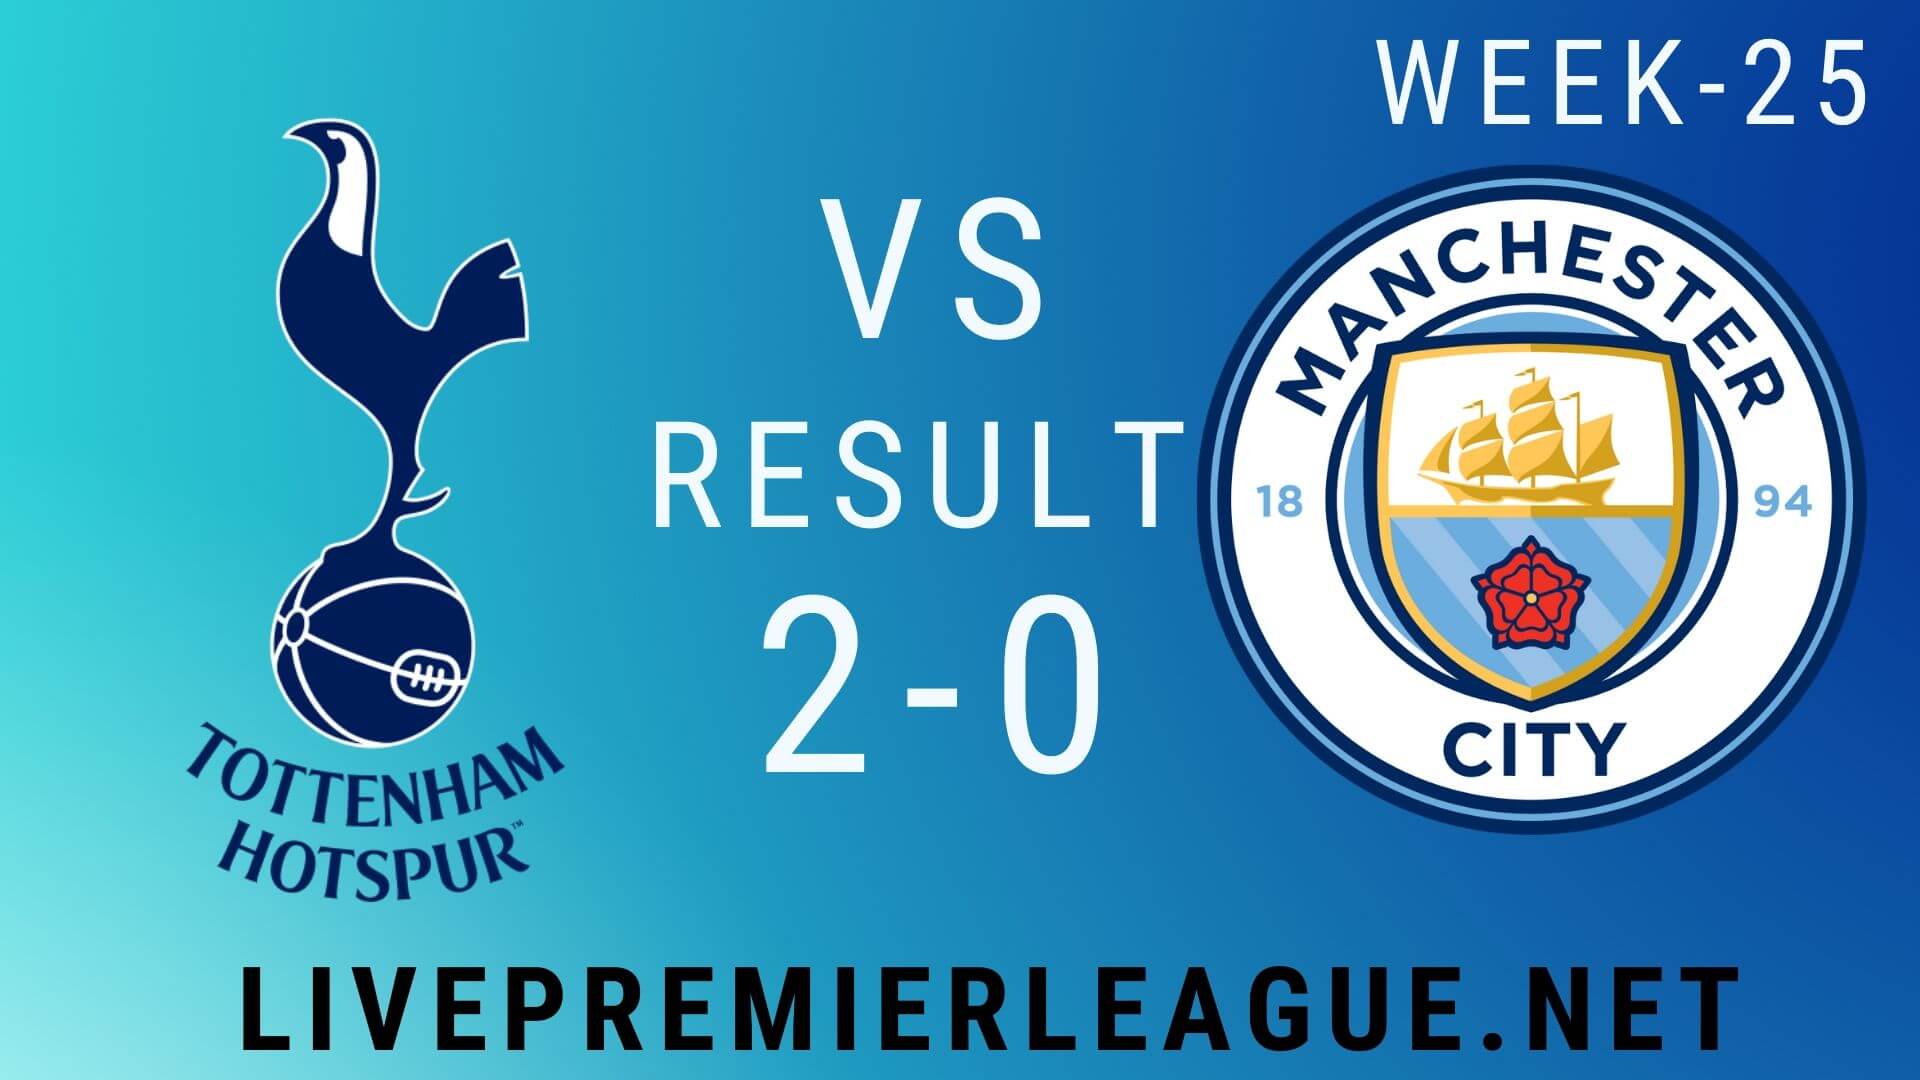 Tottenham Hotspur Vs Manchester City | Week 25 Result 2020